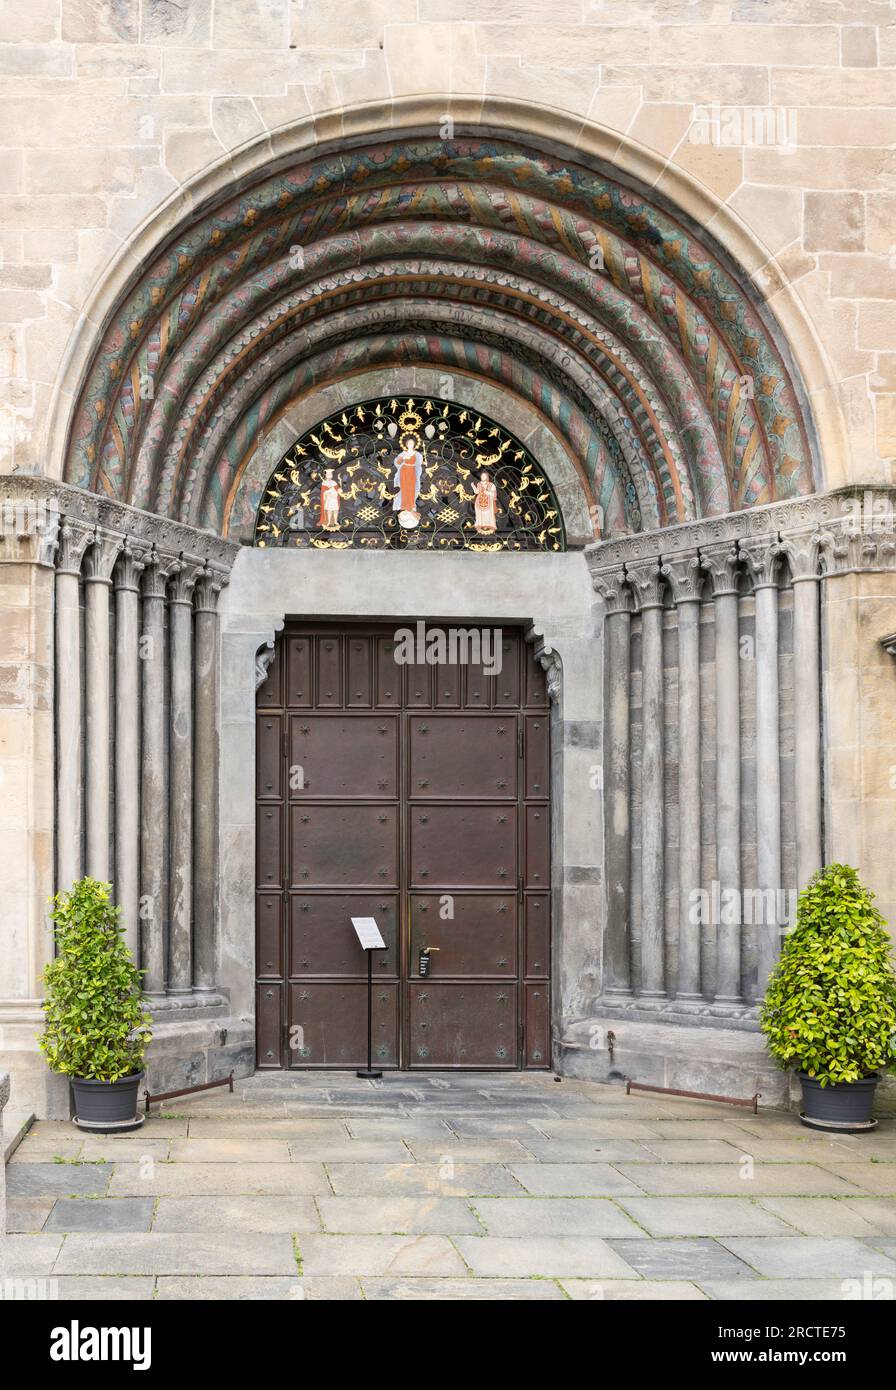 Entrée à la cathédrale catholique de l'Assomption de Marie à Coire, Suisse, Europe Banque D'Images